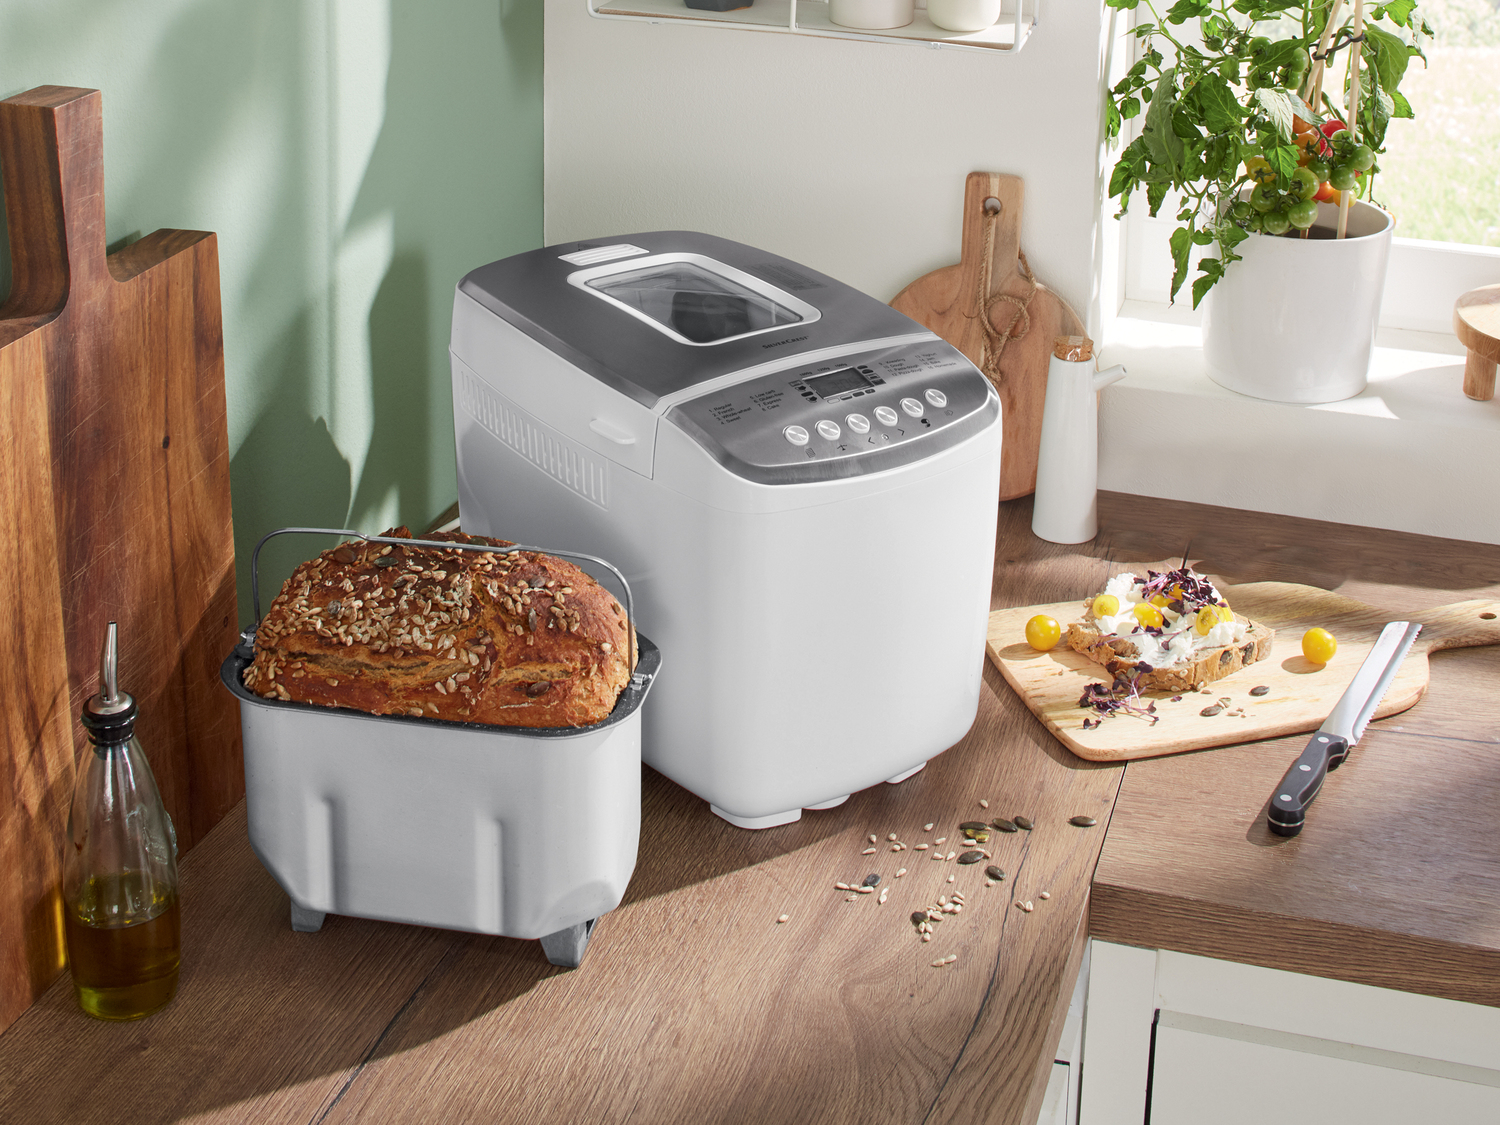 Machine à pain , le prix 49.99 € 
- 850 W
- Hublot pour contrôler la cuisson
- ...